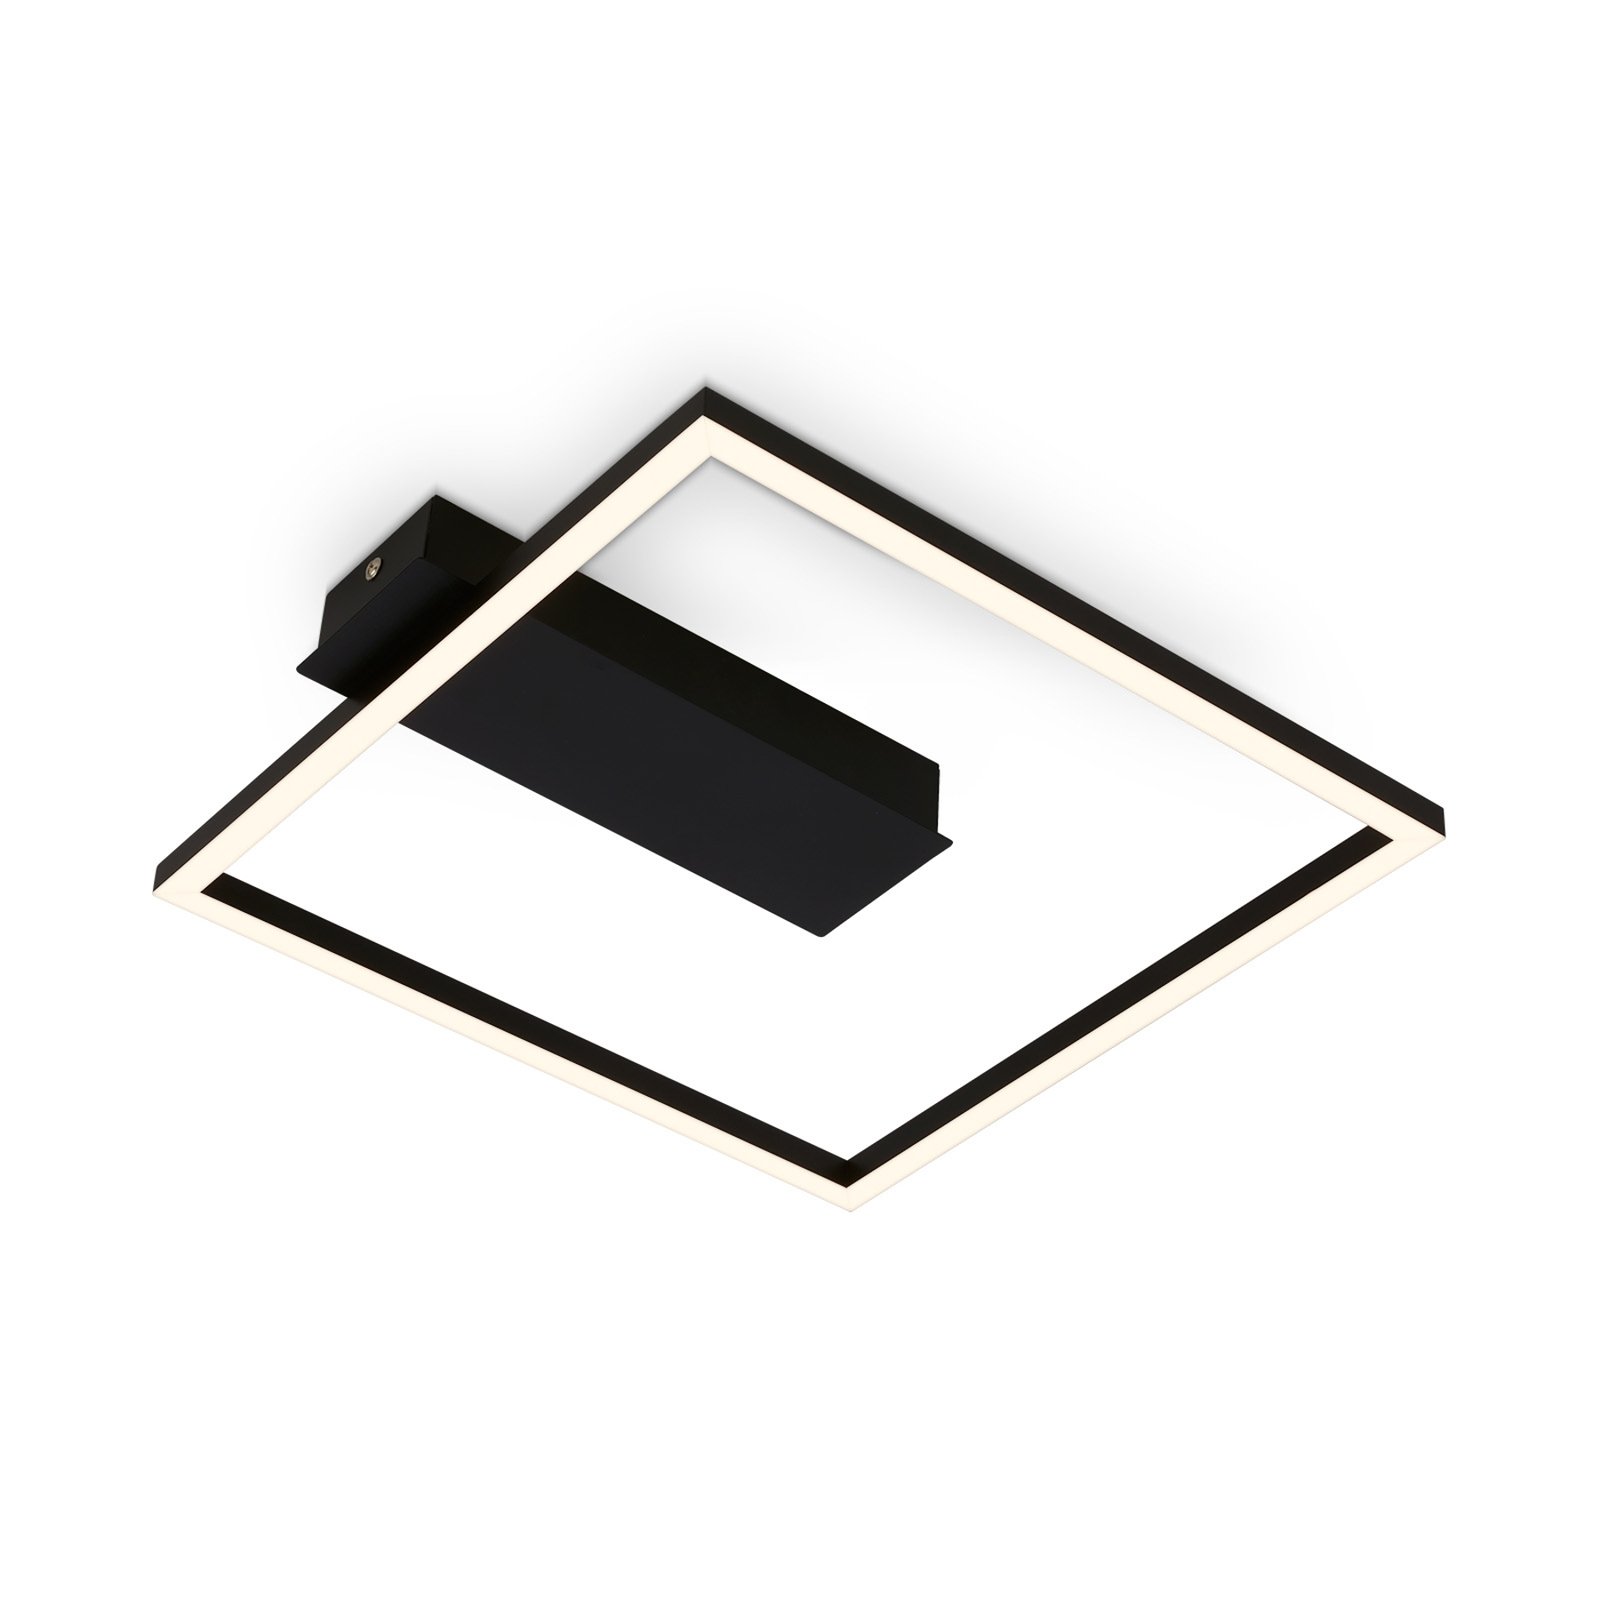 Φωτιστικό οροφής LED 3771 σε μορφή πλαισίου, μαύρο